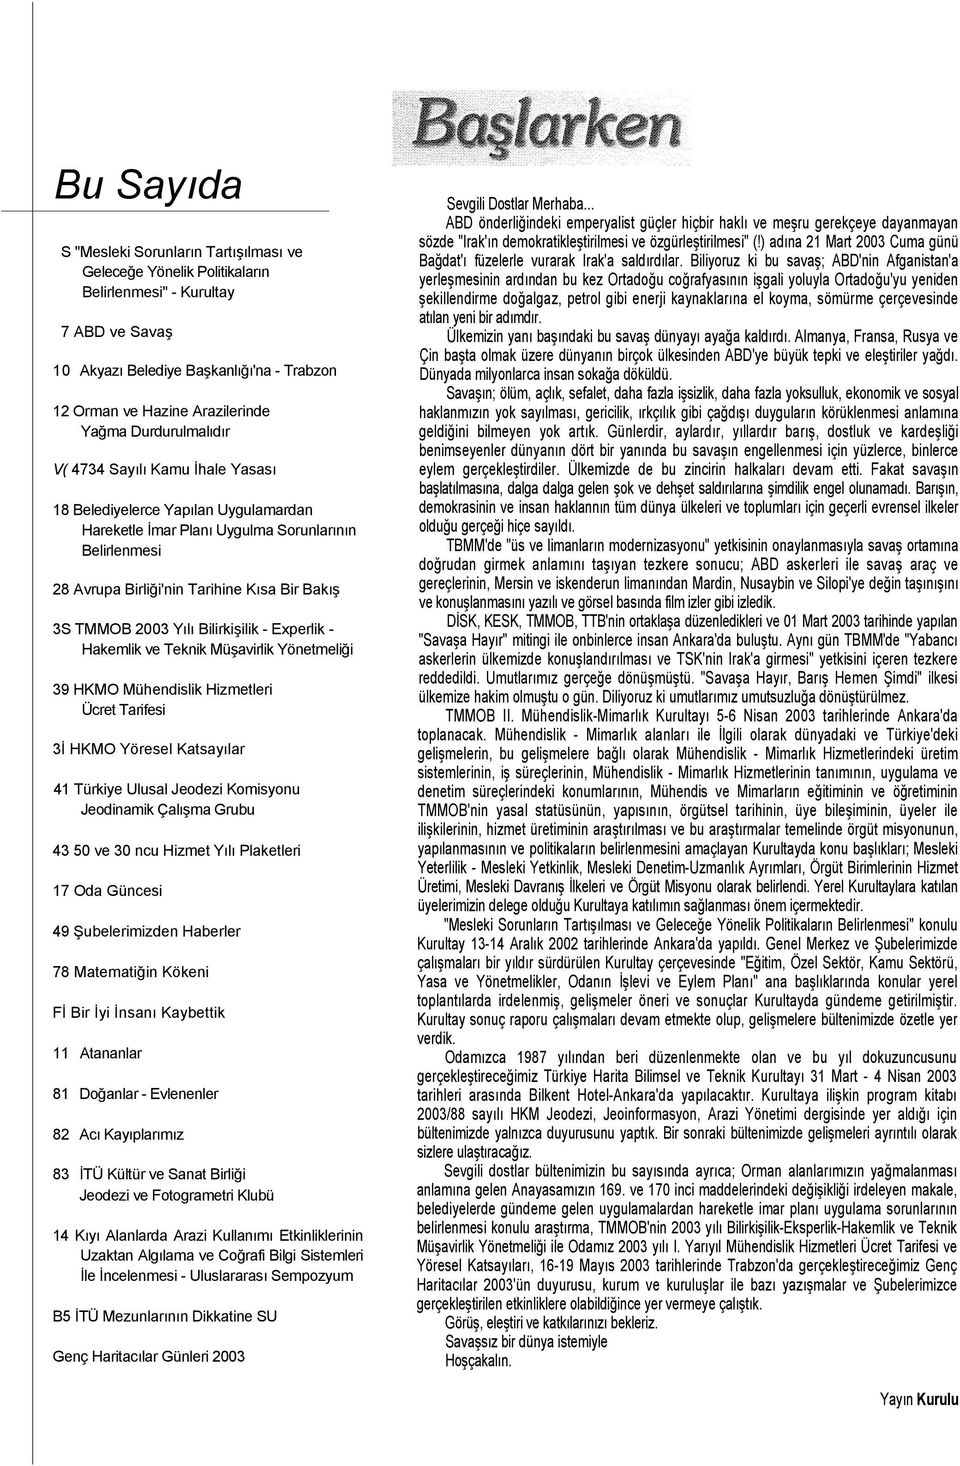 2003 Yılı Bilirkişilik - Experlik - Hakemlik ve Teknik Müşavirlik Yönetmeliği 39 HKMO Mühendislik Hizmetleri Ücret Tarifesi 3İ HKMO Yöresel Katsayılar 41 Türkiye Ulusal Jeodezi Komisyonu Jeodinamik